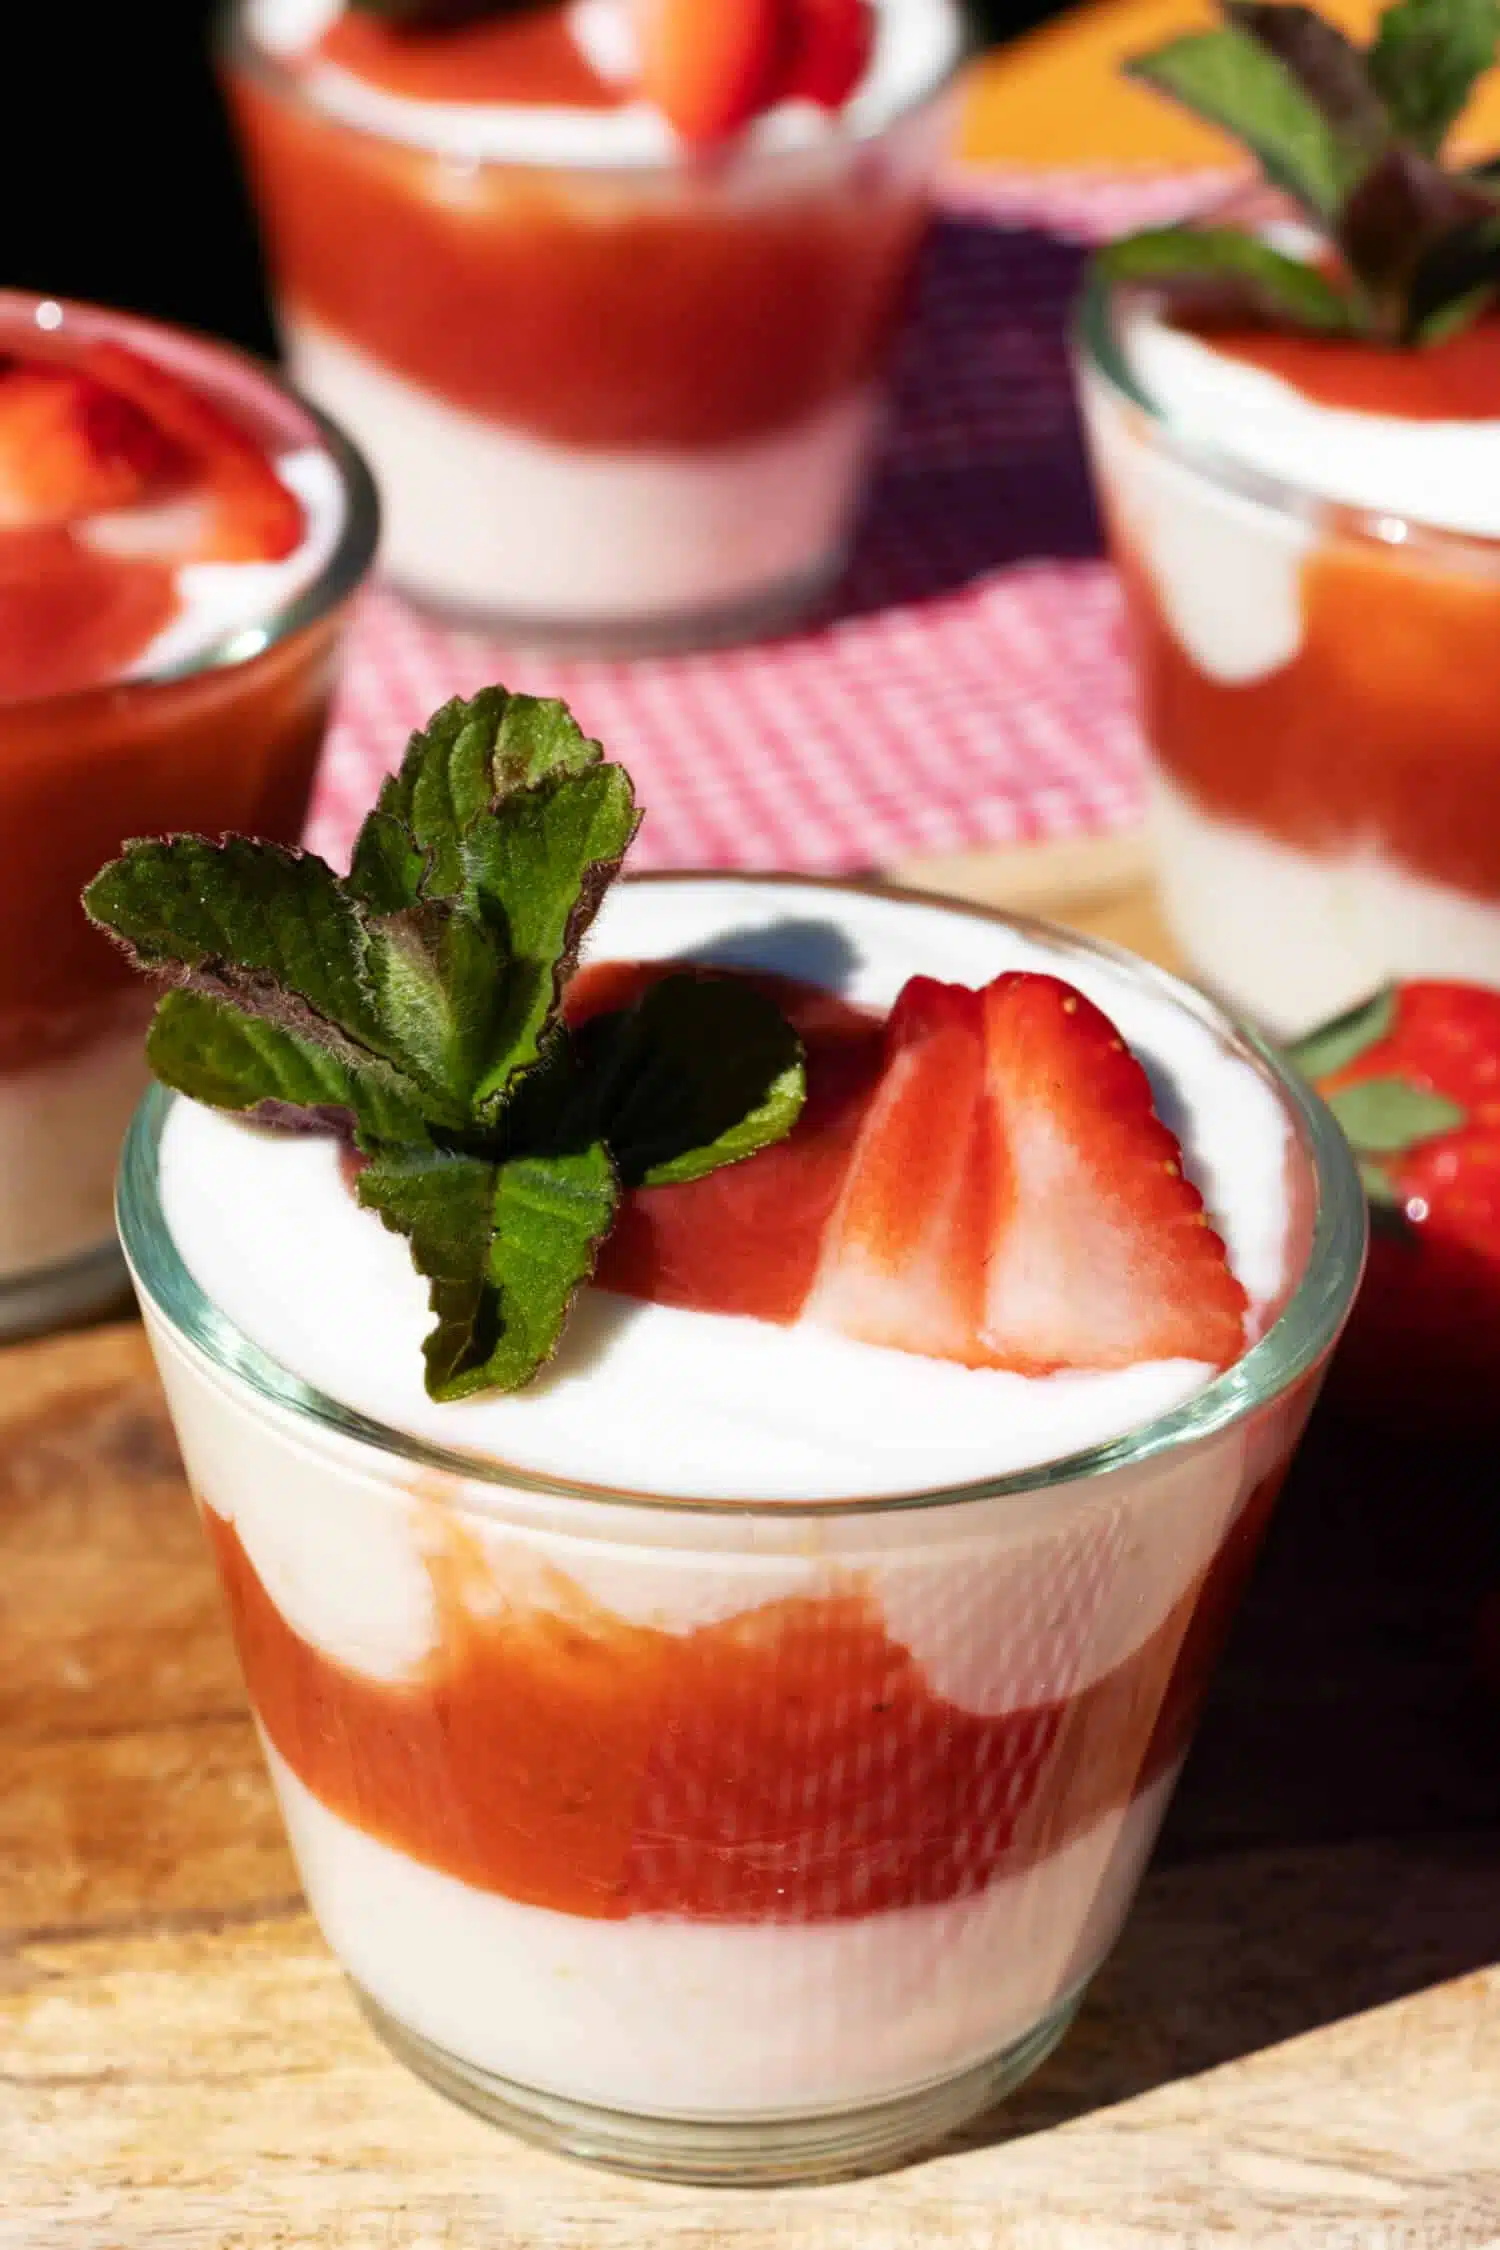 Erdbeer Rhabarber Joghurt Dessert ohne Zucker